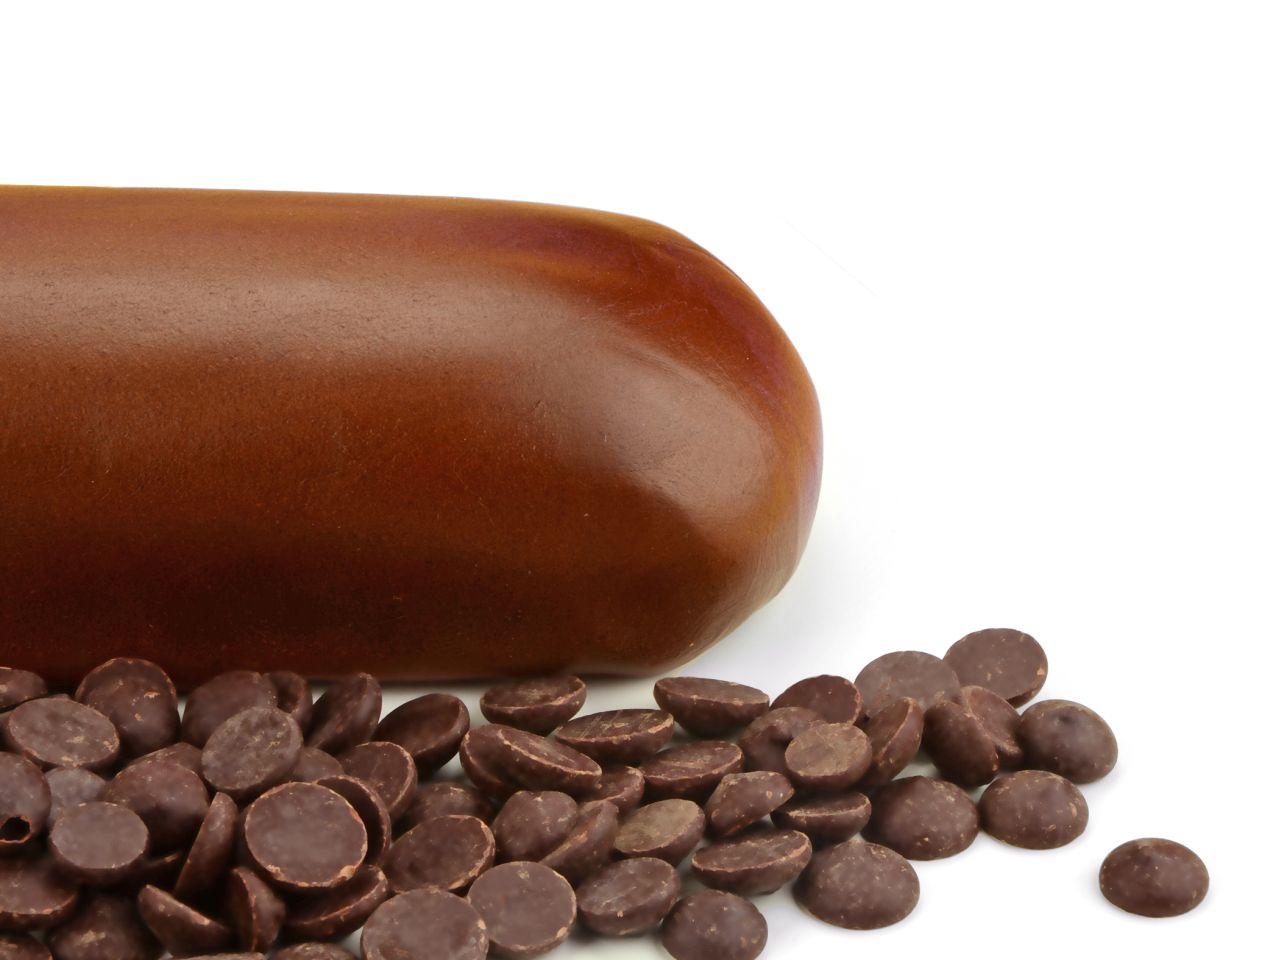 Schokoladen-Rollfondant, mit echter Kuvertüre, Braun, sahnetauglich, 250 g